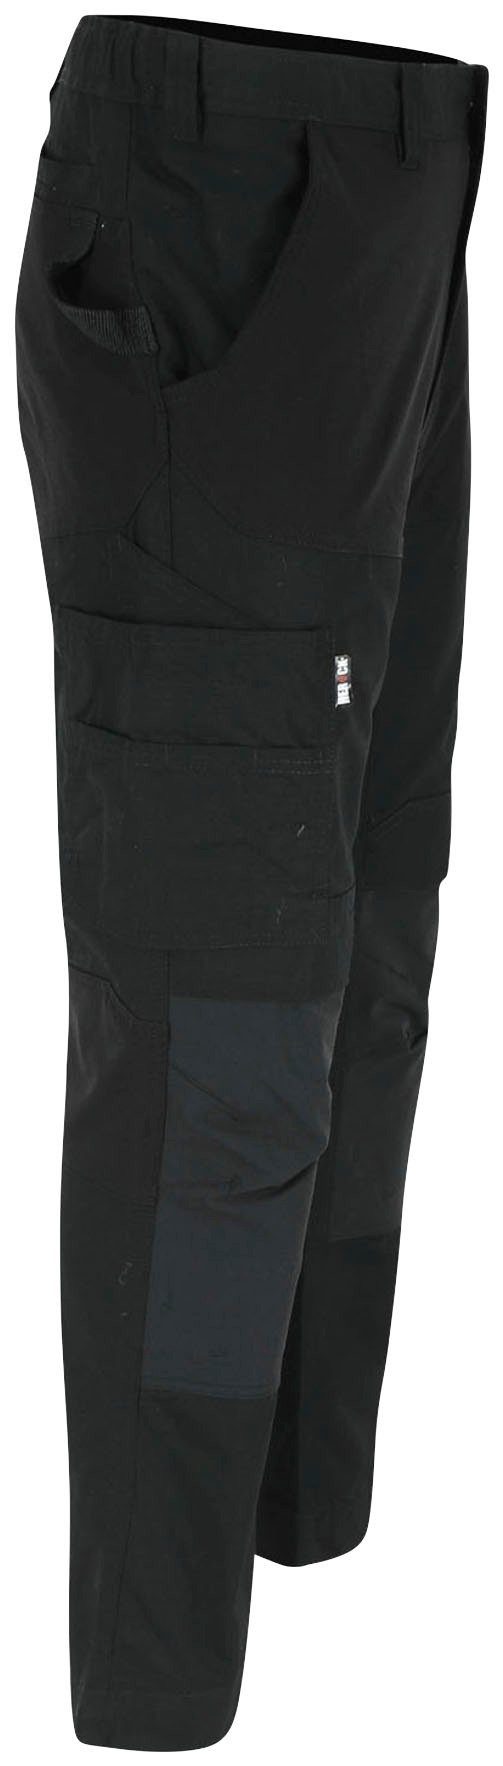 SHORTLEG und Hoses Multi-Pocket, schwarz feste Arbeitshose Hector 2 Kurzgröβe, 4-Wege-Stretch-Teile Herock Nageltaschen